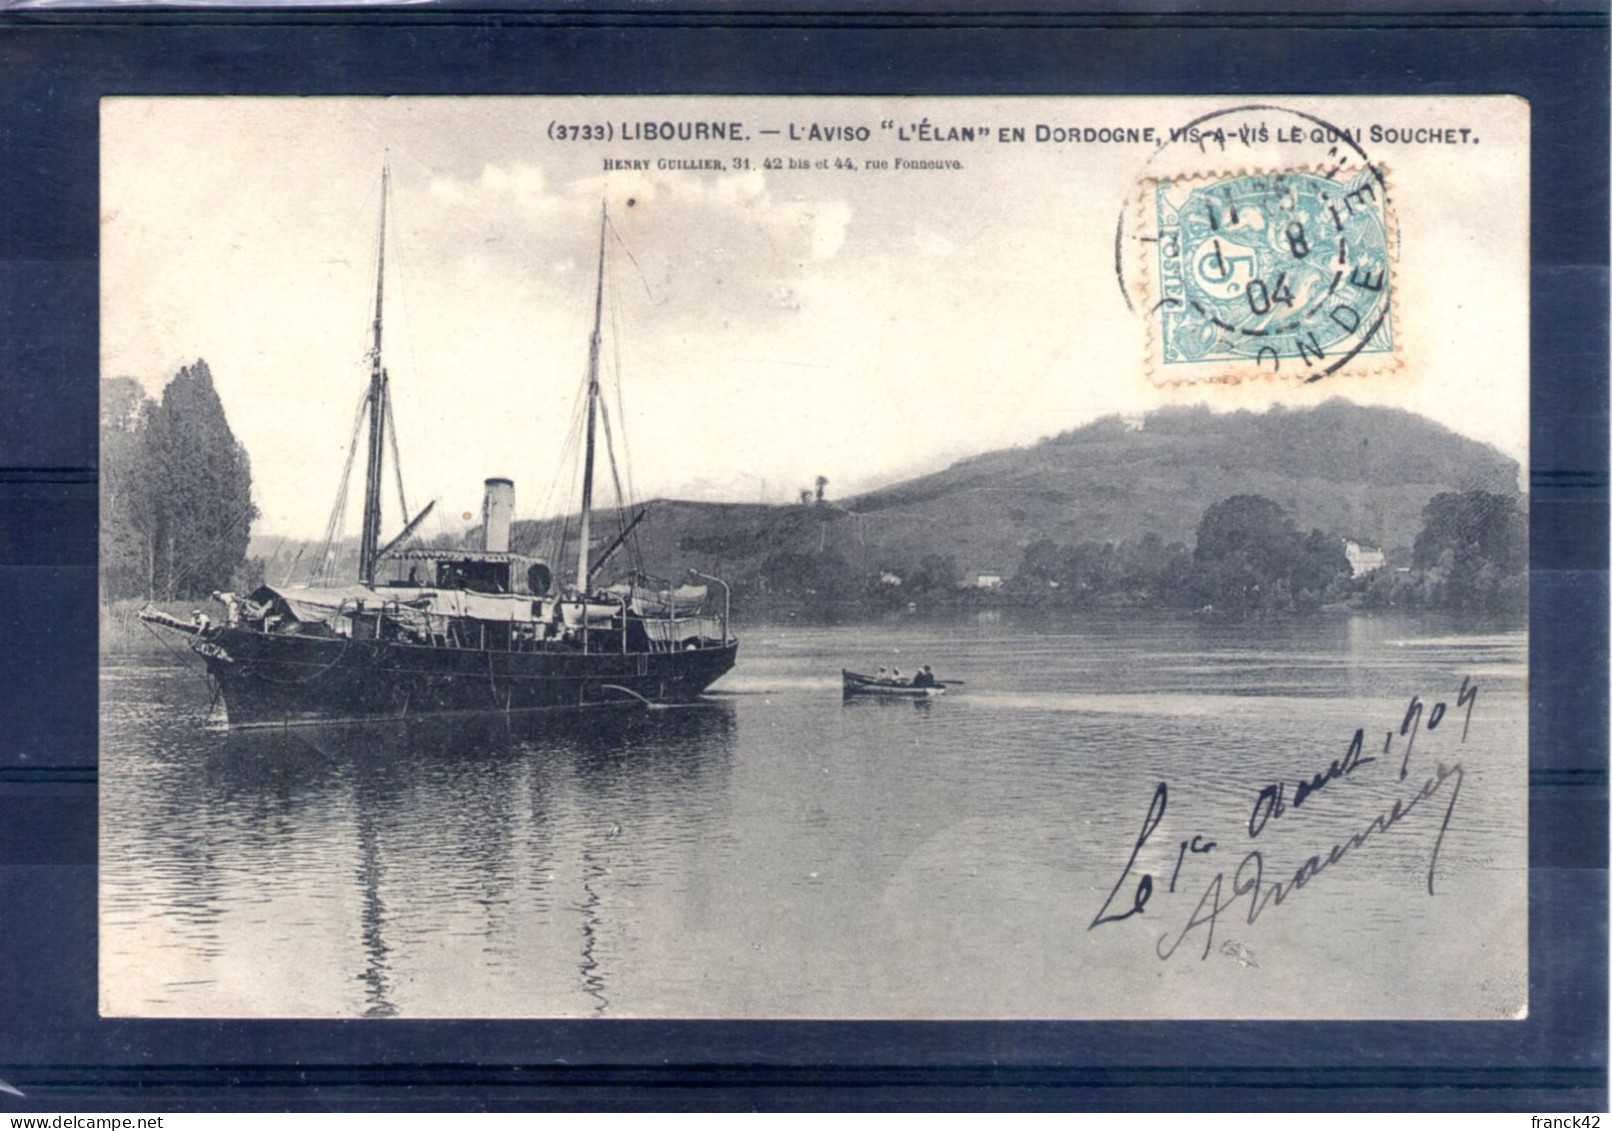 33. Libourne. L'aviso "l'élan" En Dordogne, Vis à Vis Du Quai Souchet - Libourne